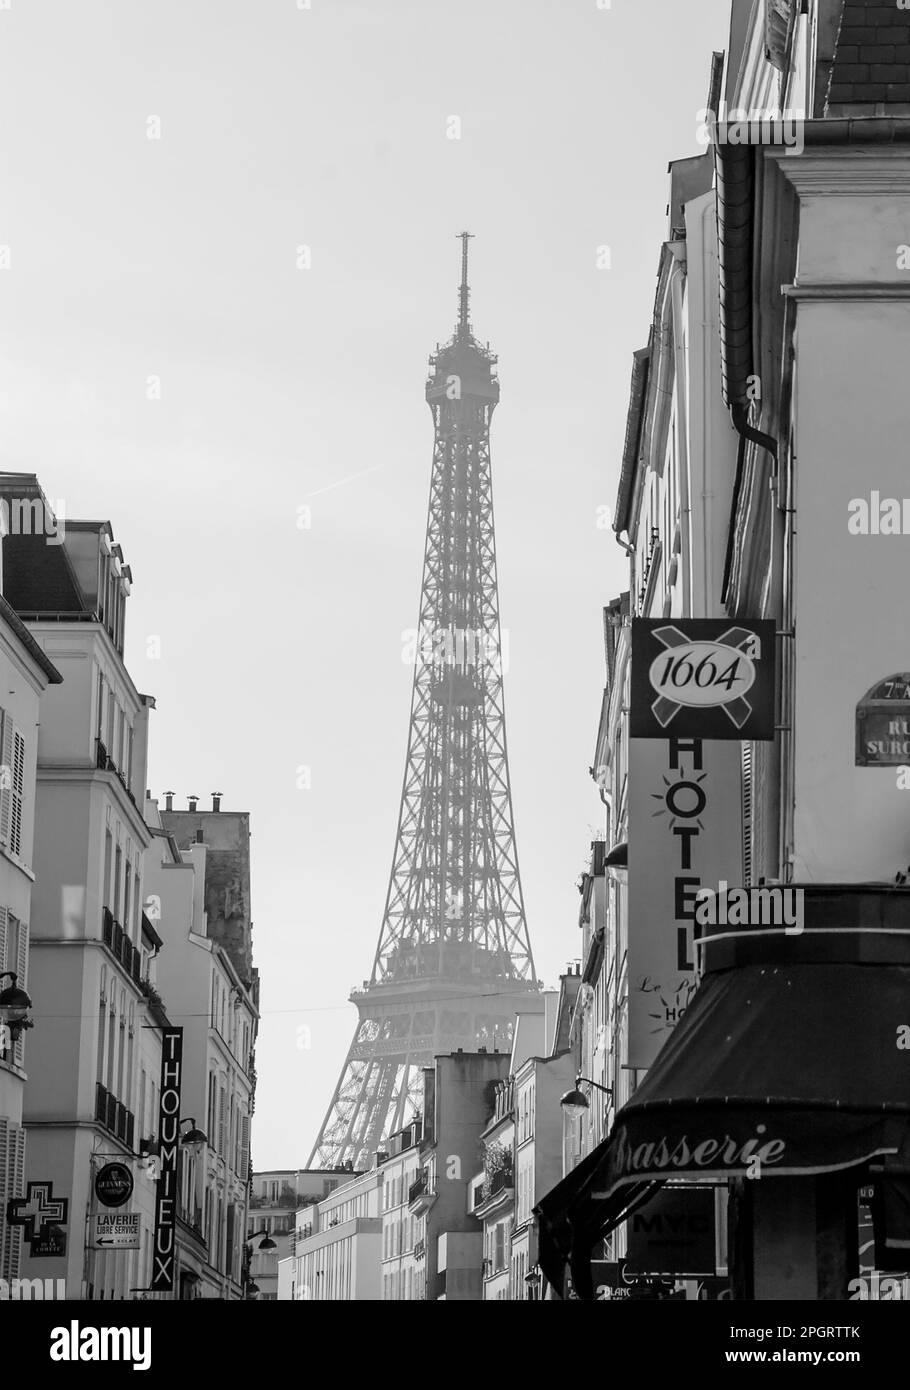 PARIS, FRANCE - 12 MARS 2016 : Tour Eiffel vue dans la brume de la rue parisienne typique avec des cafés et des hôtels. Photo historique noir et blanc. Banque D'Images